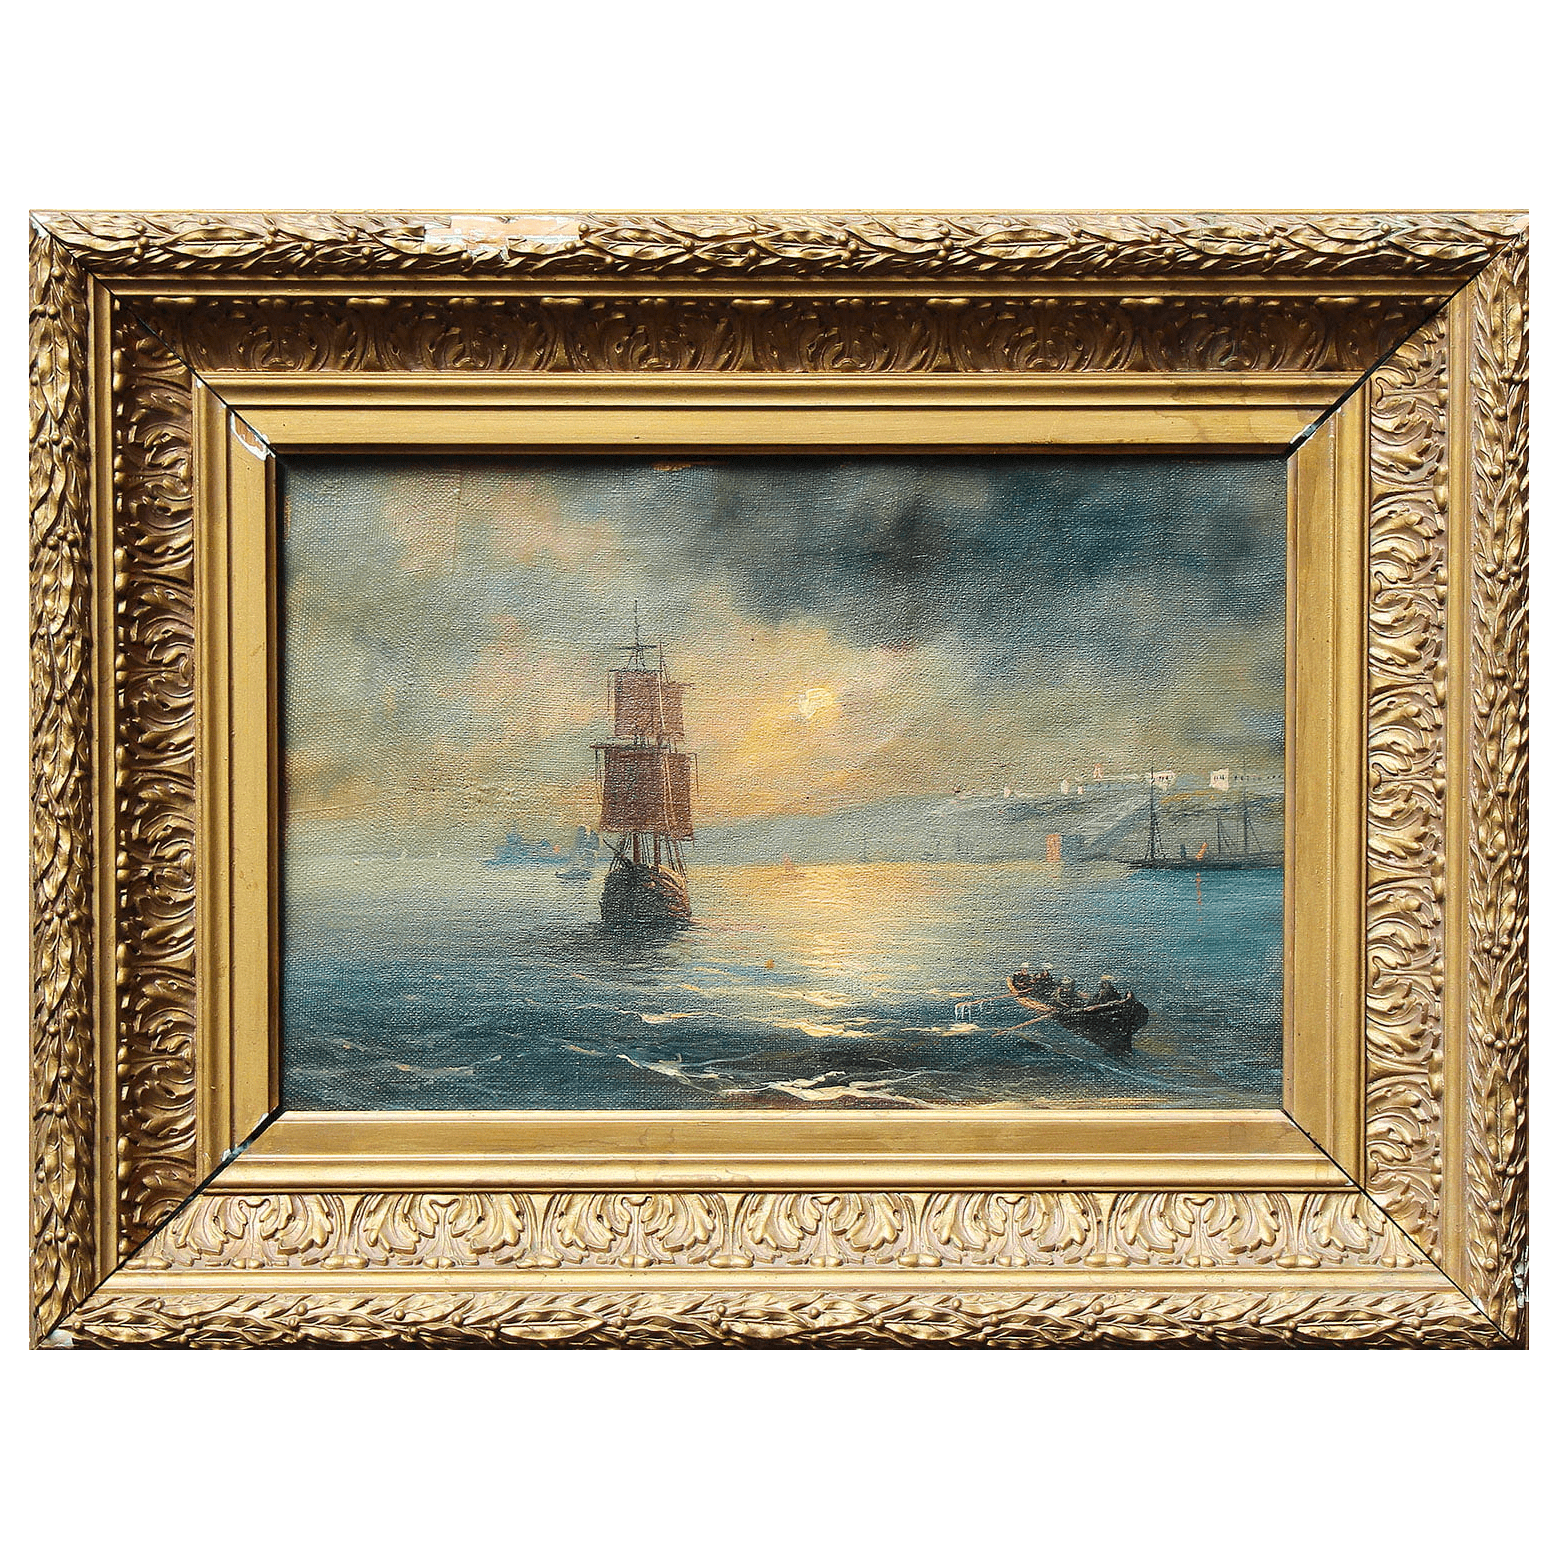 Картина «Морской пейзаж с кораблем» нач. 20 в., холст, масло